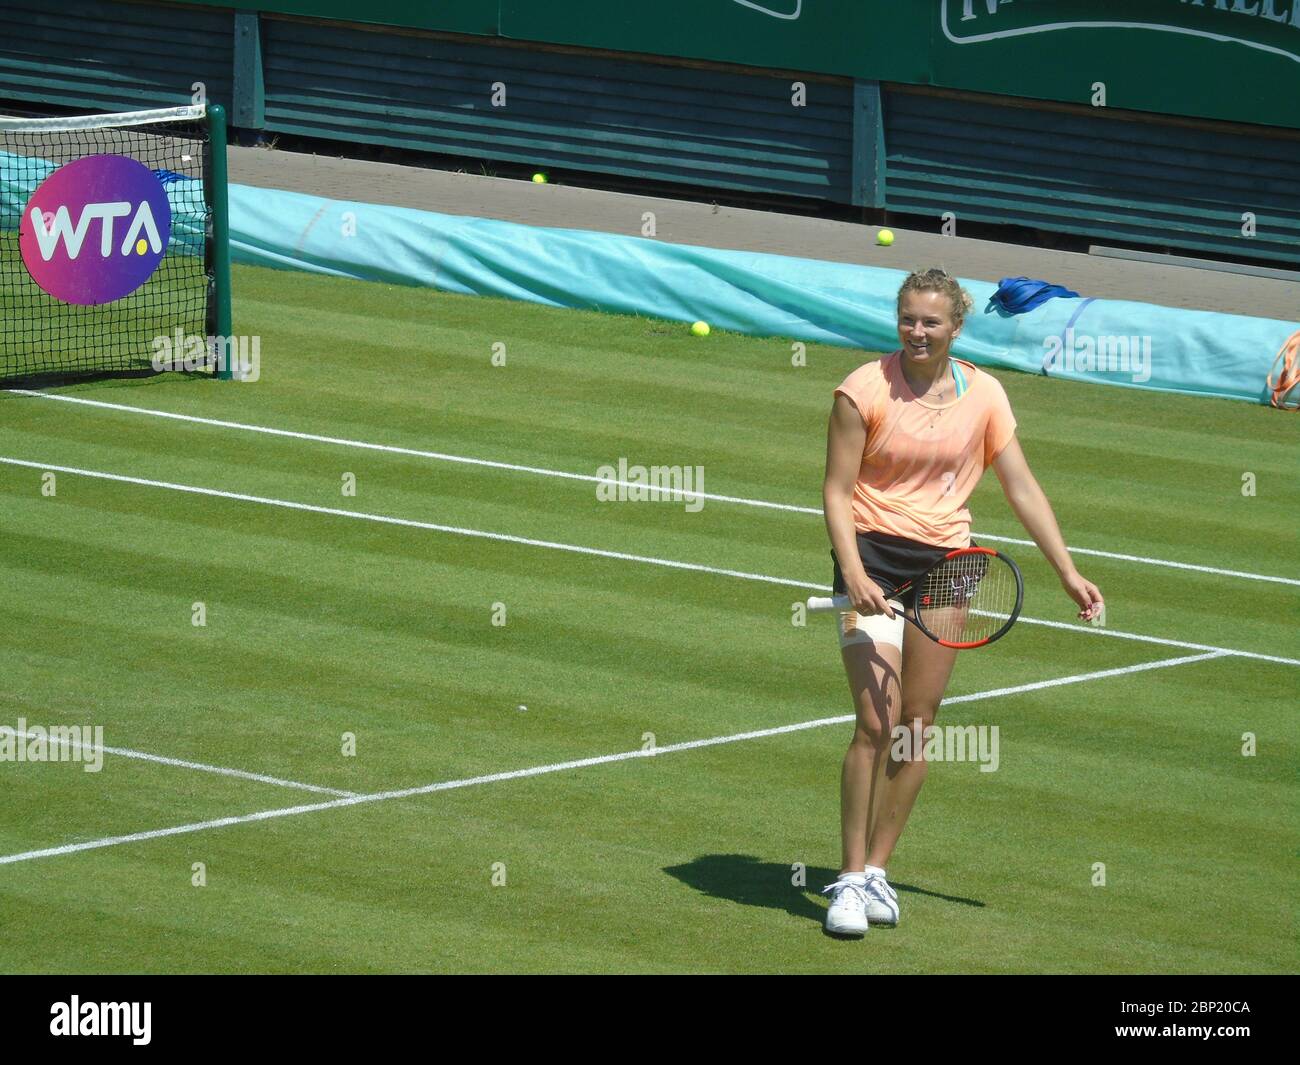 Katerina Siniakova at the WTA women's tennis tournament, Edgbaston Priory Club, Nature Valley Classic, Birmingham, UK 22/06/2021 Stock Photo